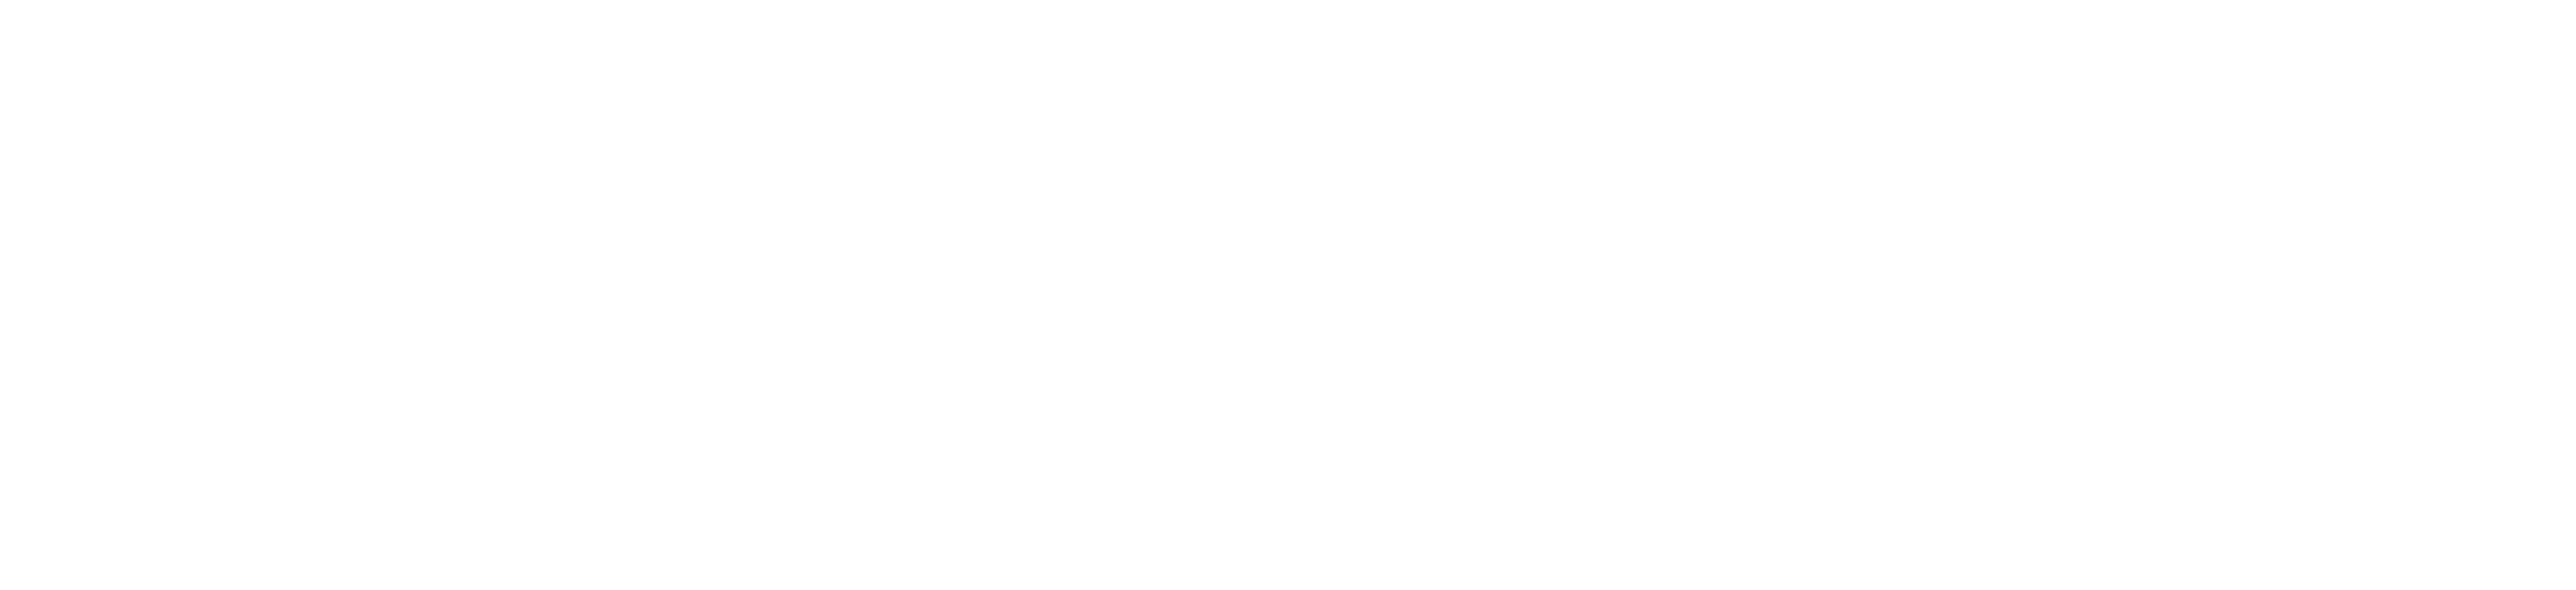 Max-Planck-Institut für Biochemie